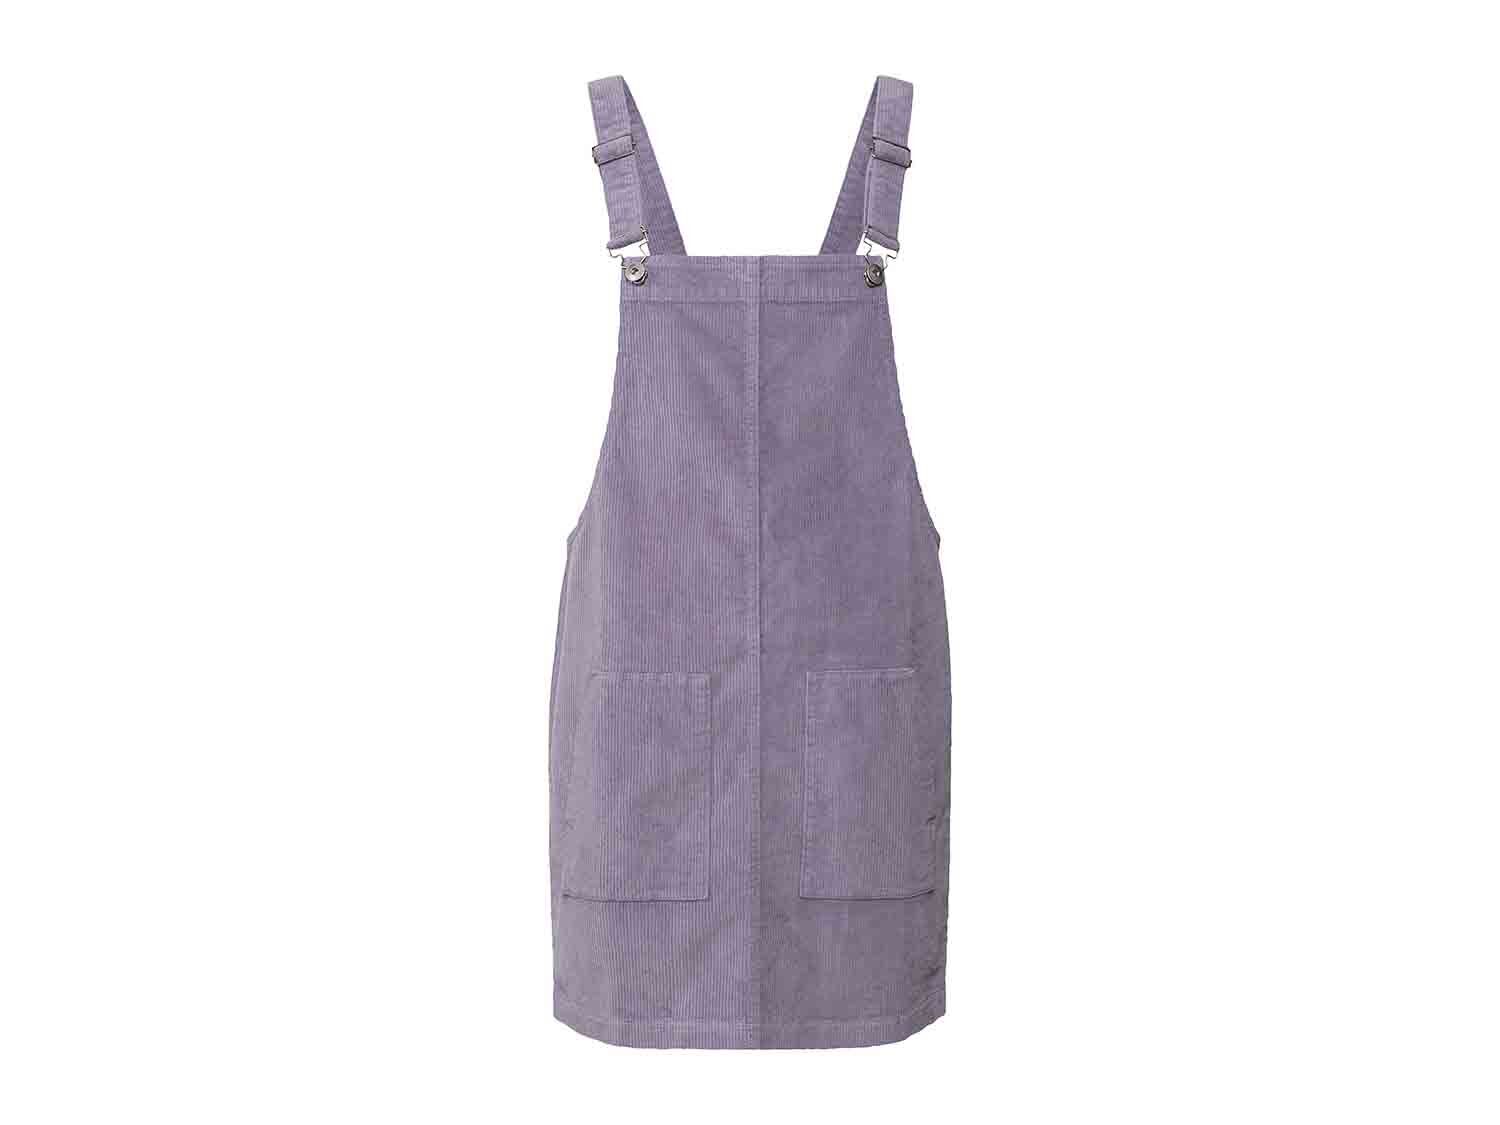 Peto de pana lila con bolsillos superpuestos para mujer 